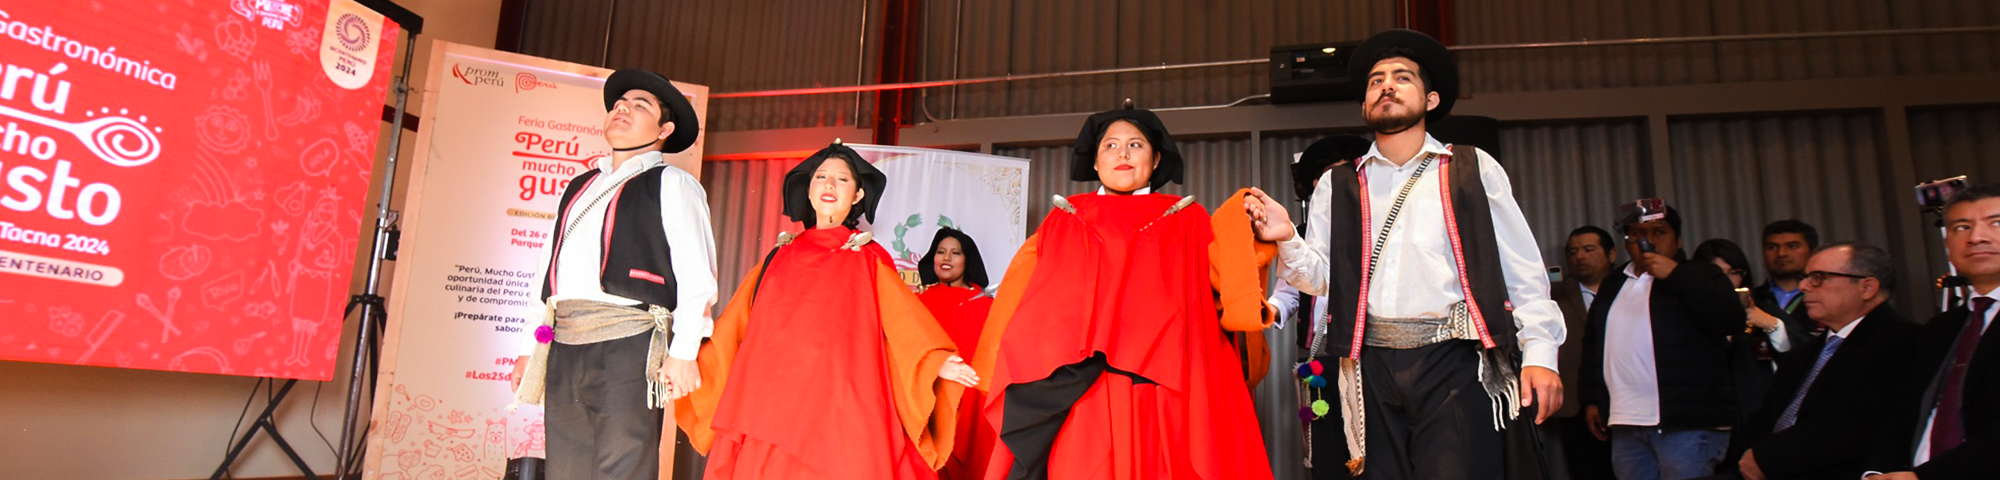 Celebra en Tacna la 25 edición de la feria Perú Mucho Gusto